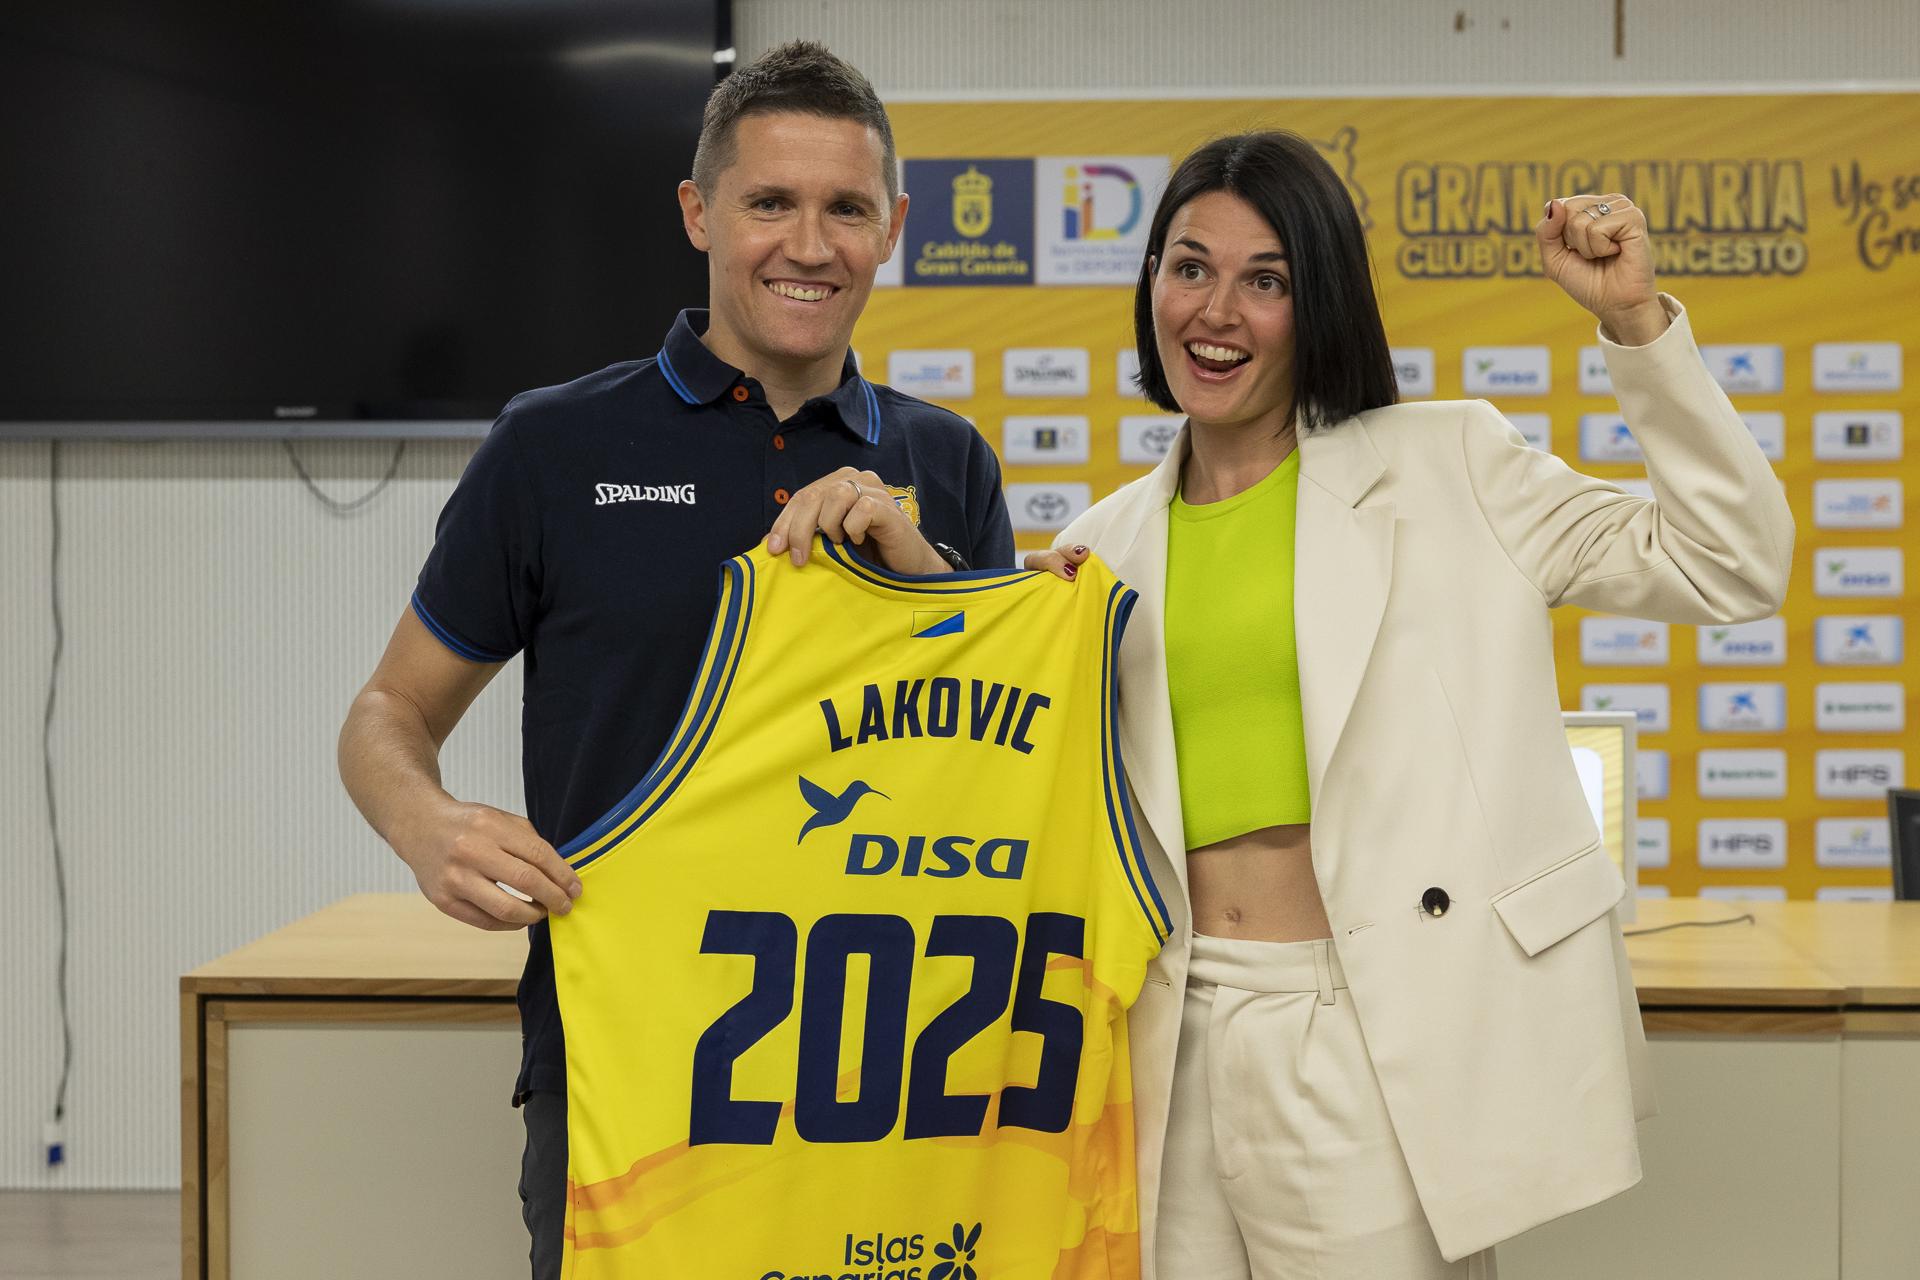 El entrenador del Gran Canaria, Jaka Lakovic, celebra con su esposa, la jugadora Helena Boada, la decisión del club de renovar su contrato por dos temporadas más, hasta 2025. EFE/Quique Curbelo